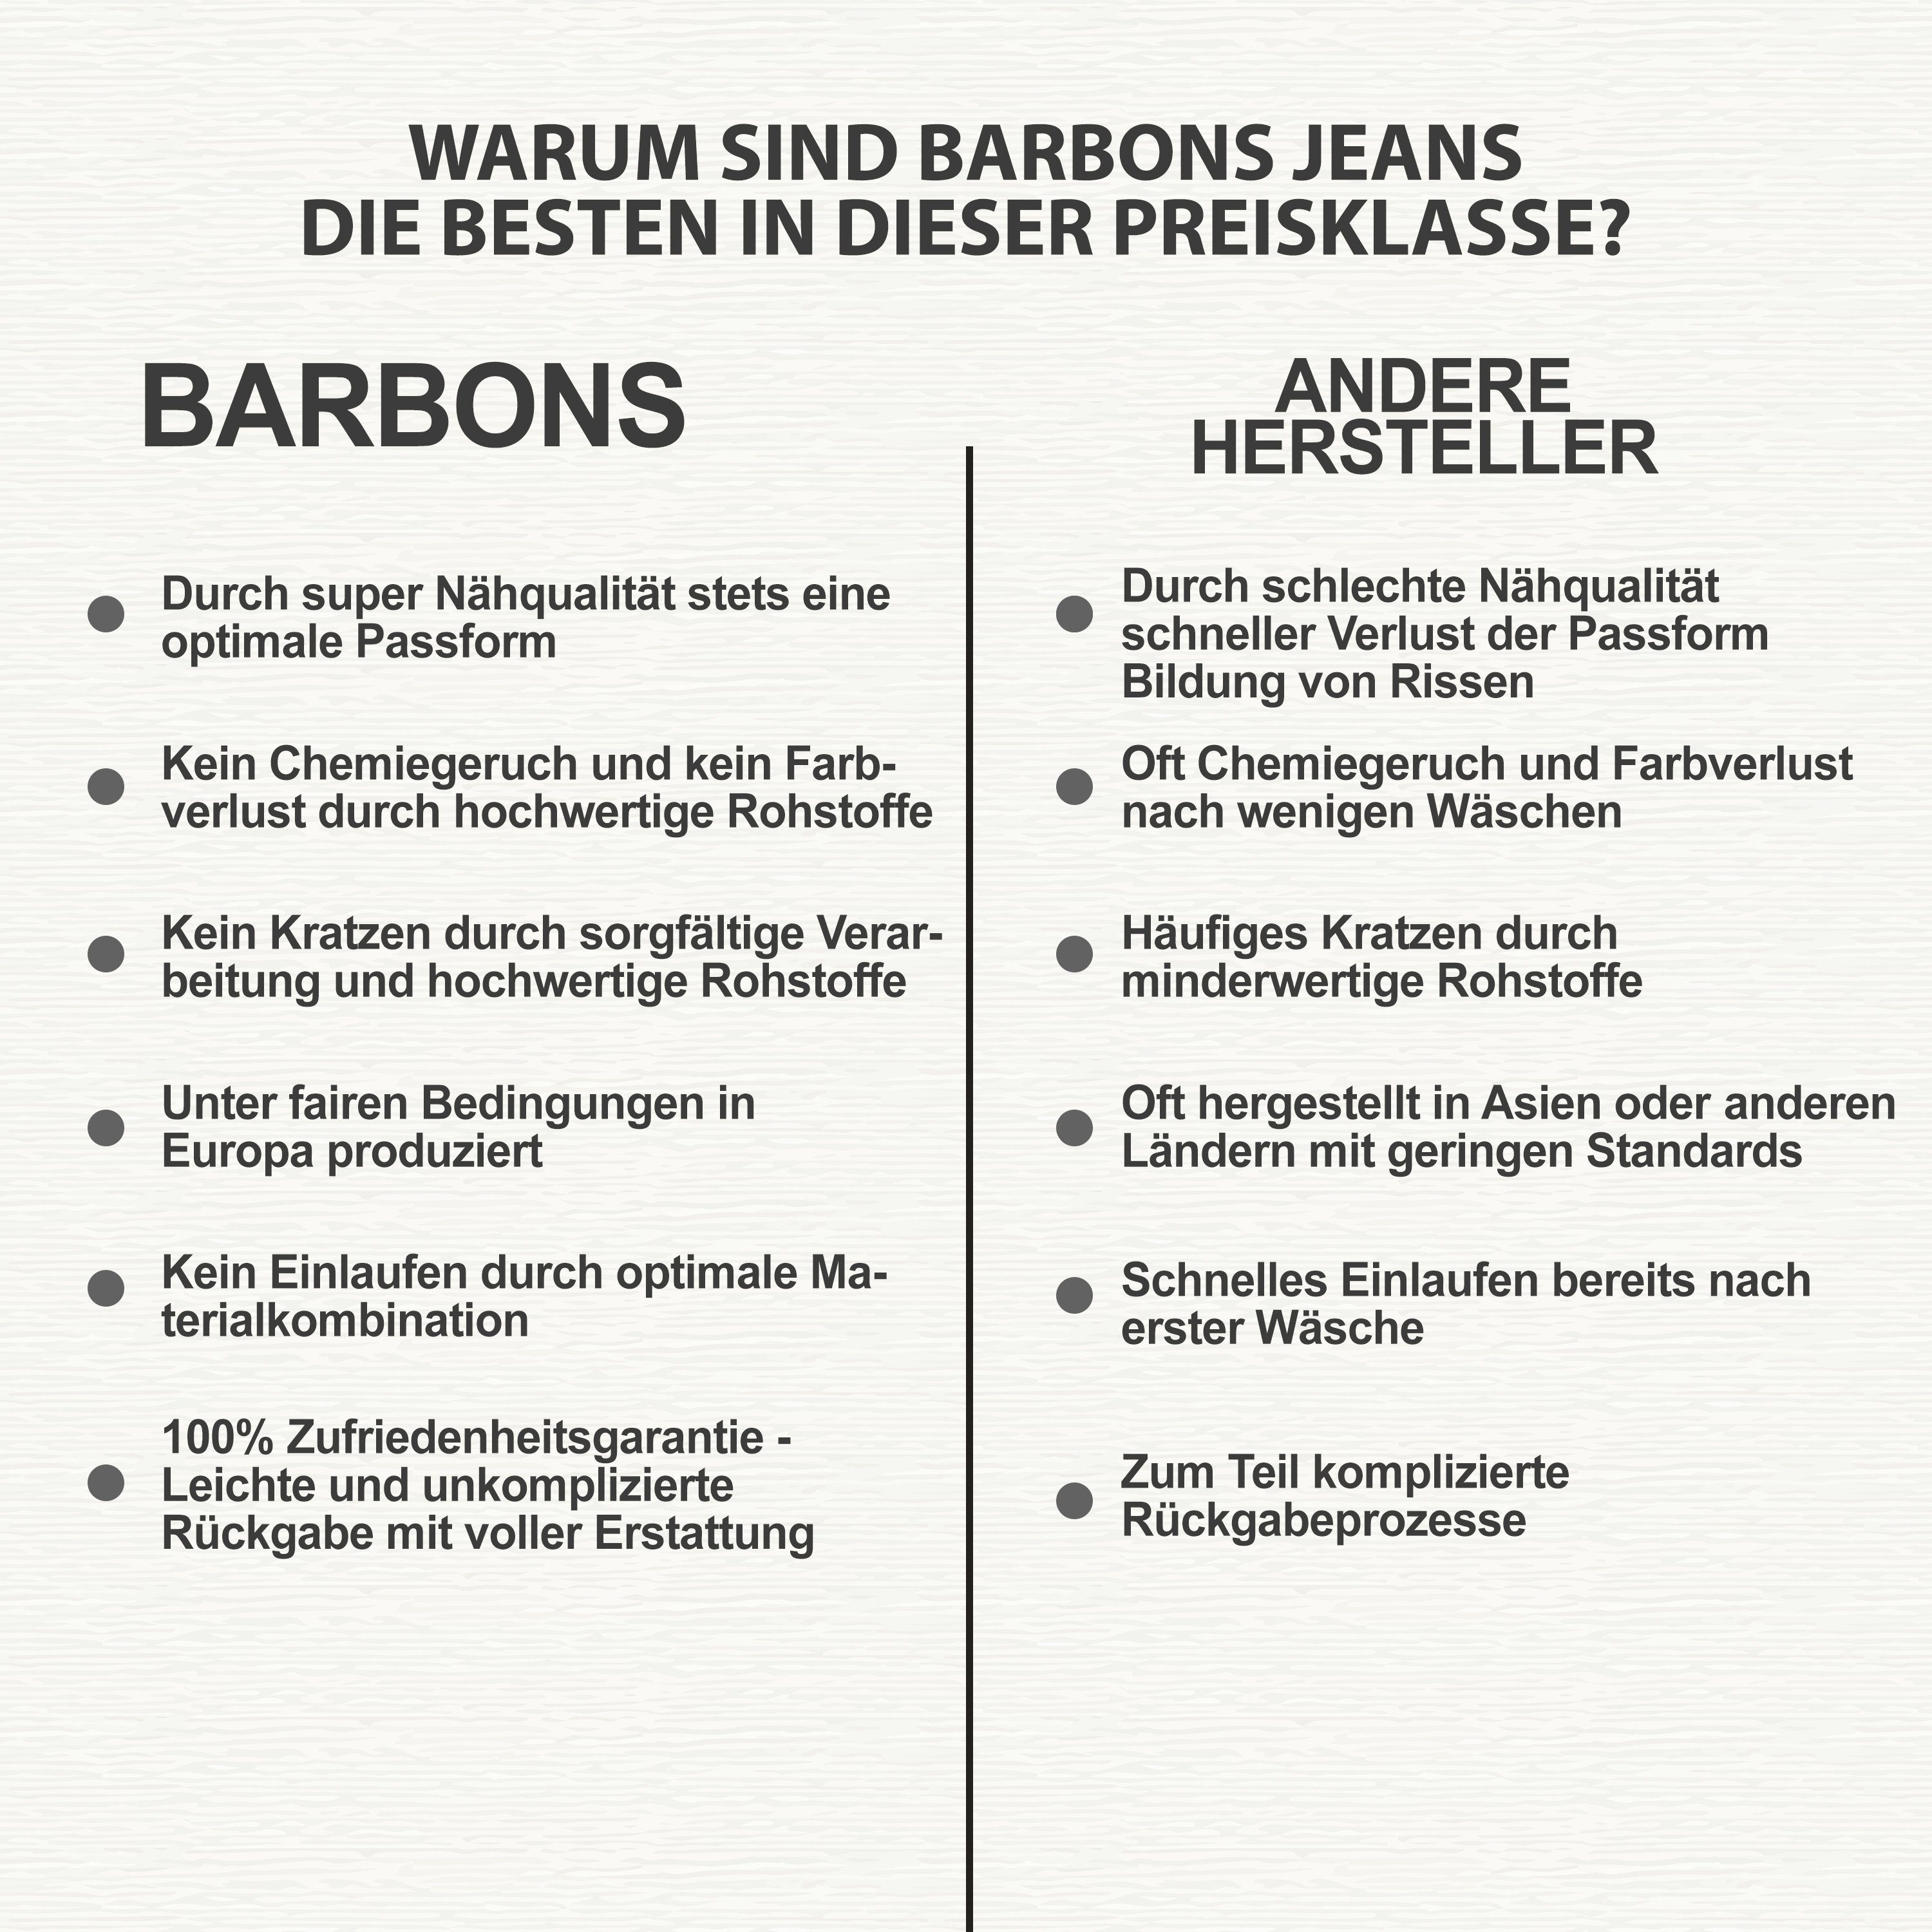 5-Pocket 5-Pocket-Jeans Regular Design Herren BARBONS 03-Schwarz Fit